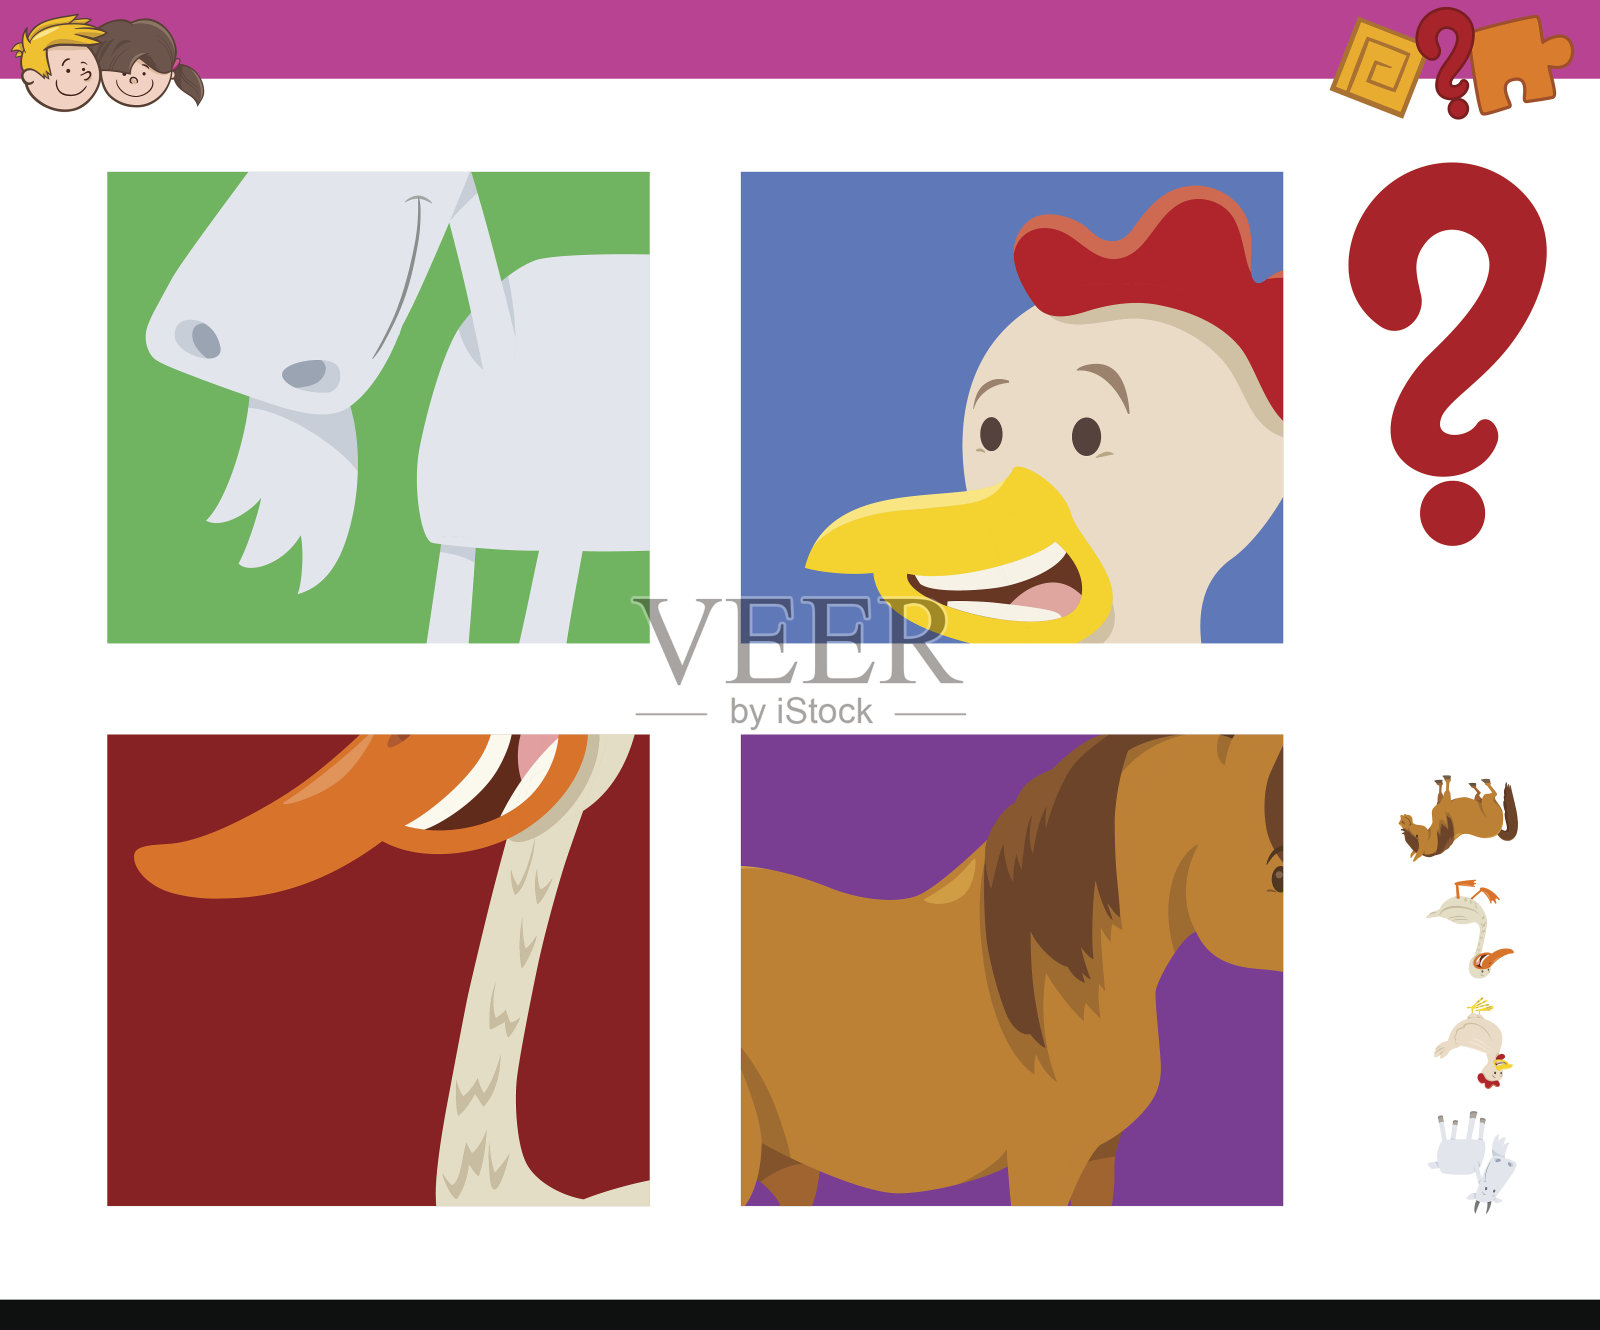 儿童看图识动物app下载v2.6-乐游网安卓下载